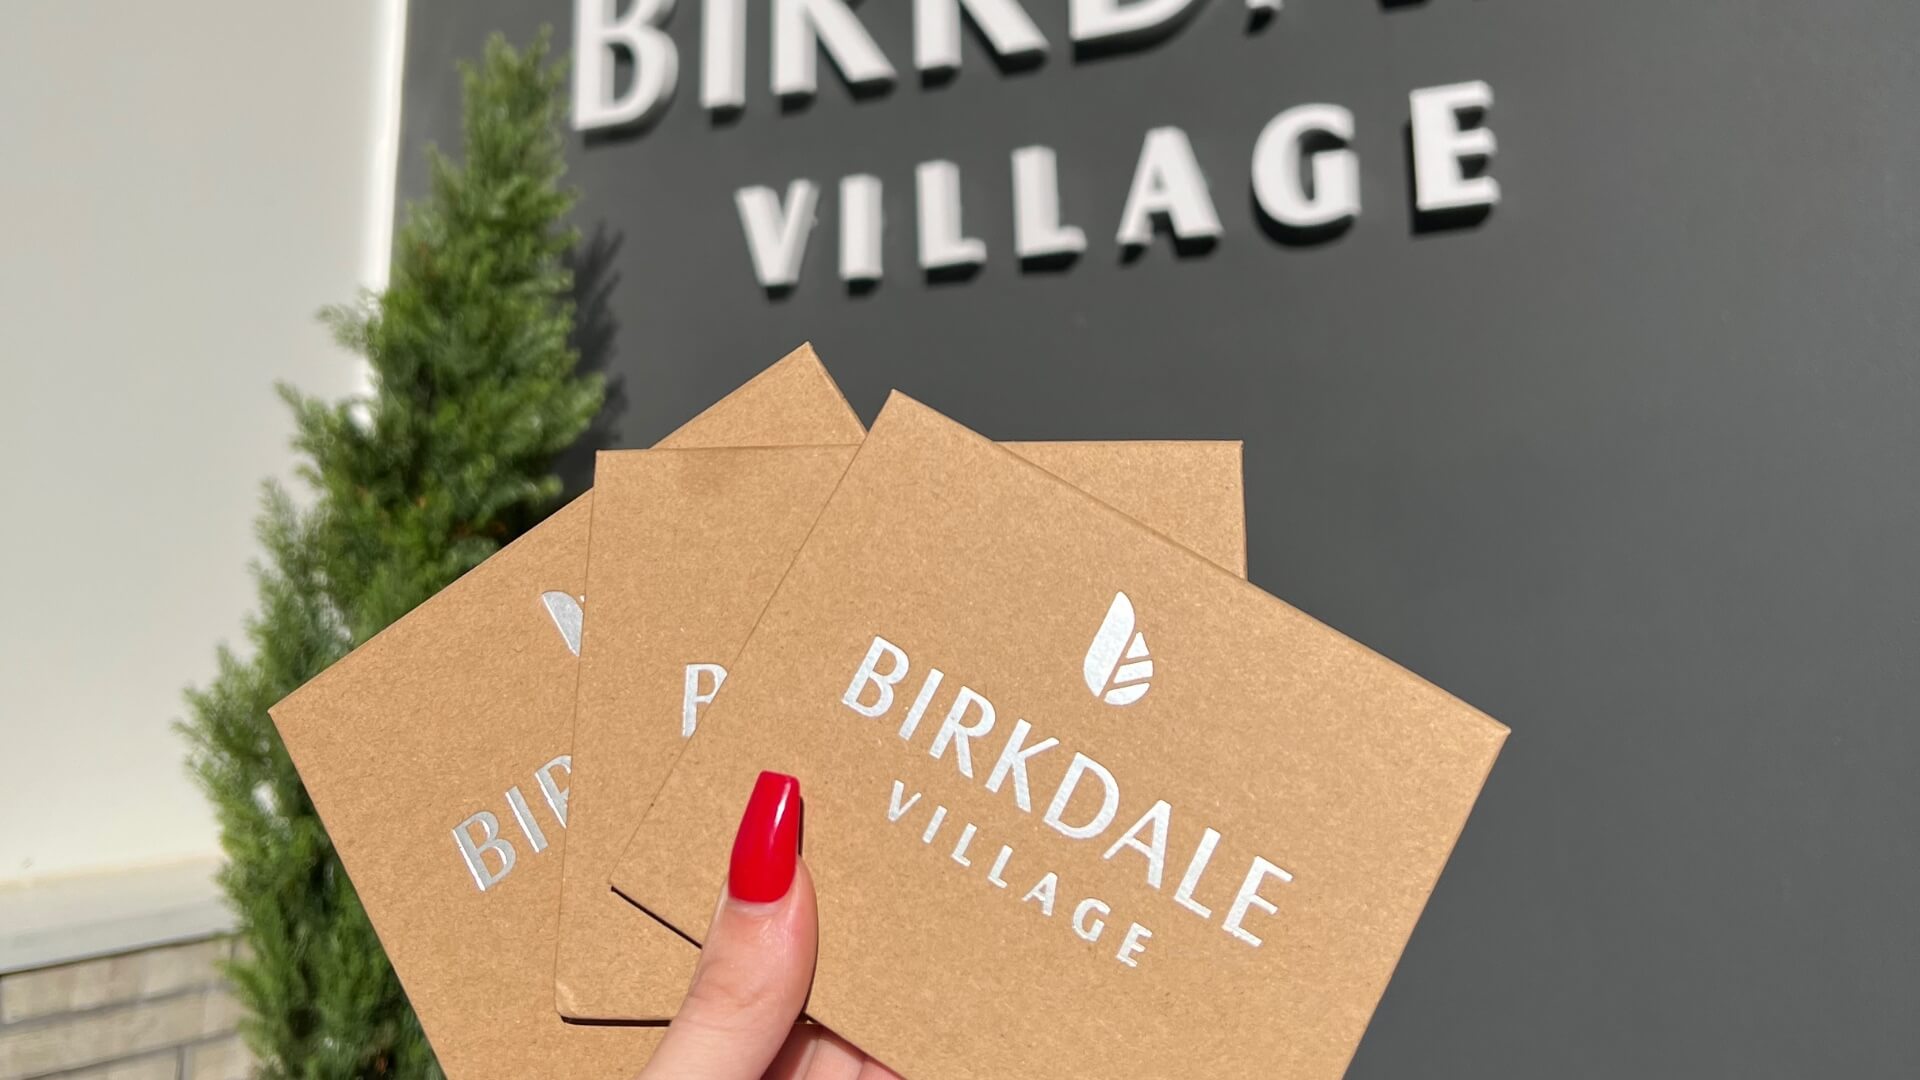 Birkdale Village gift cards